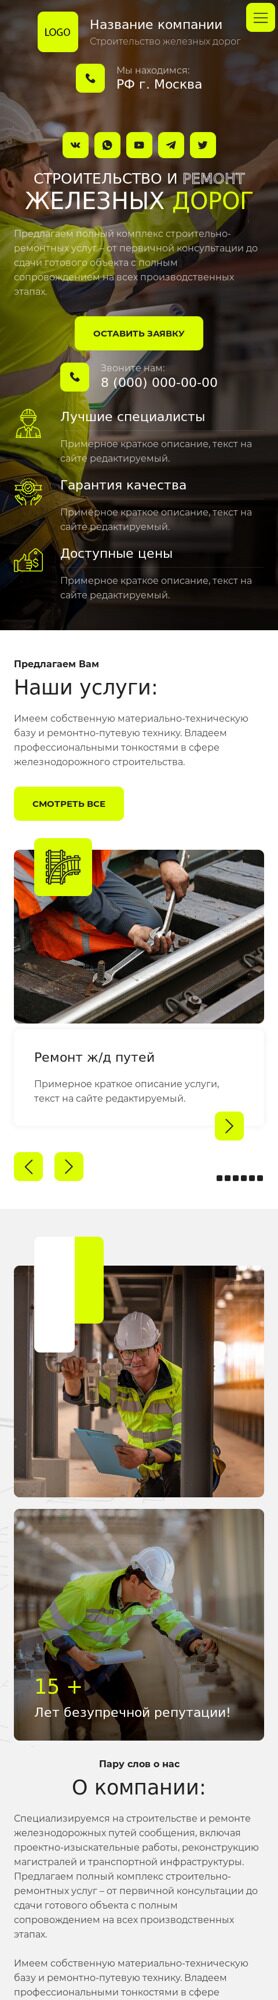 Готовый Сайт-Бизнес № 4988009 - Ремонт и строительство железных дорог (Мобильная версия)